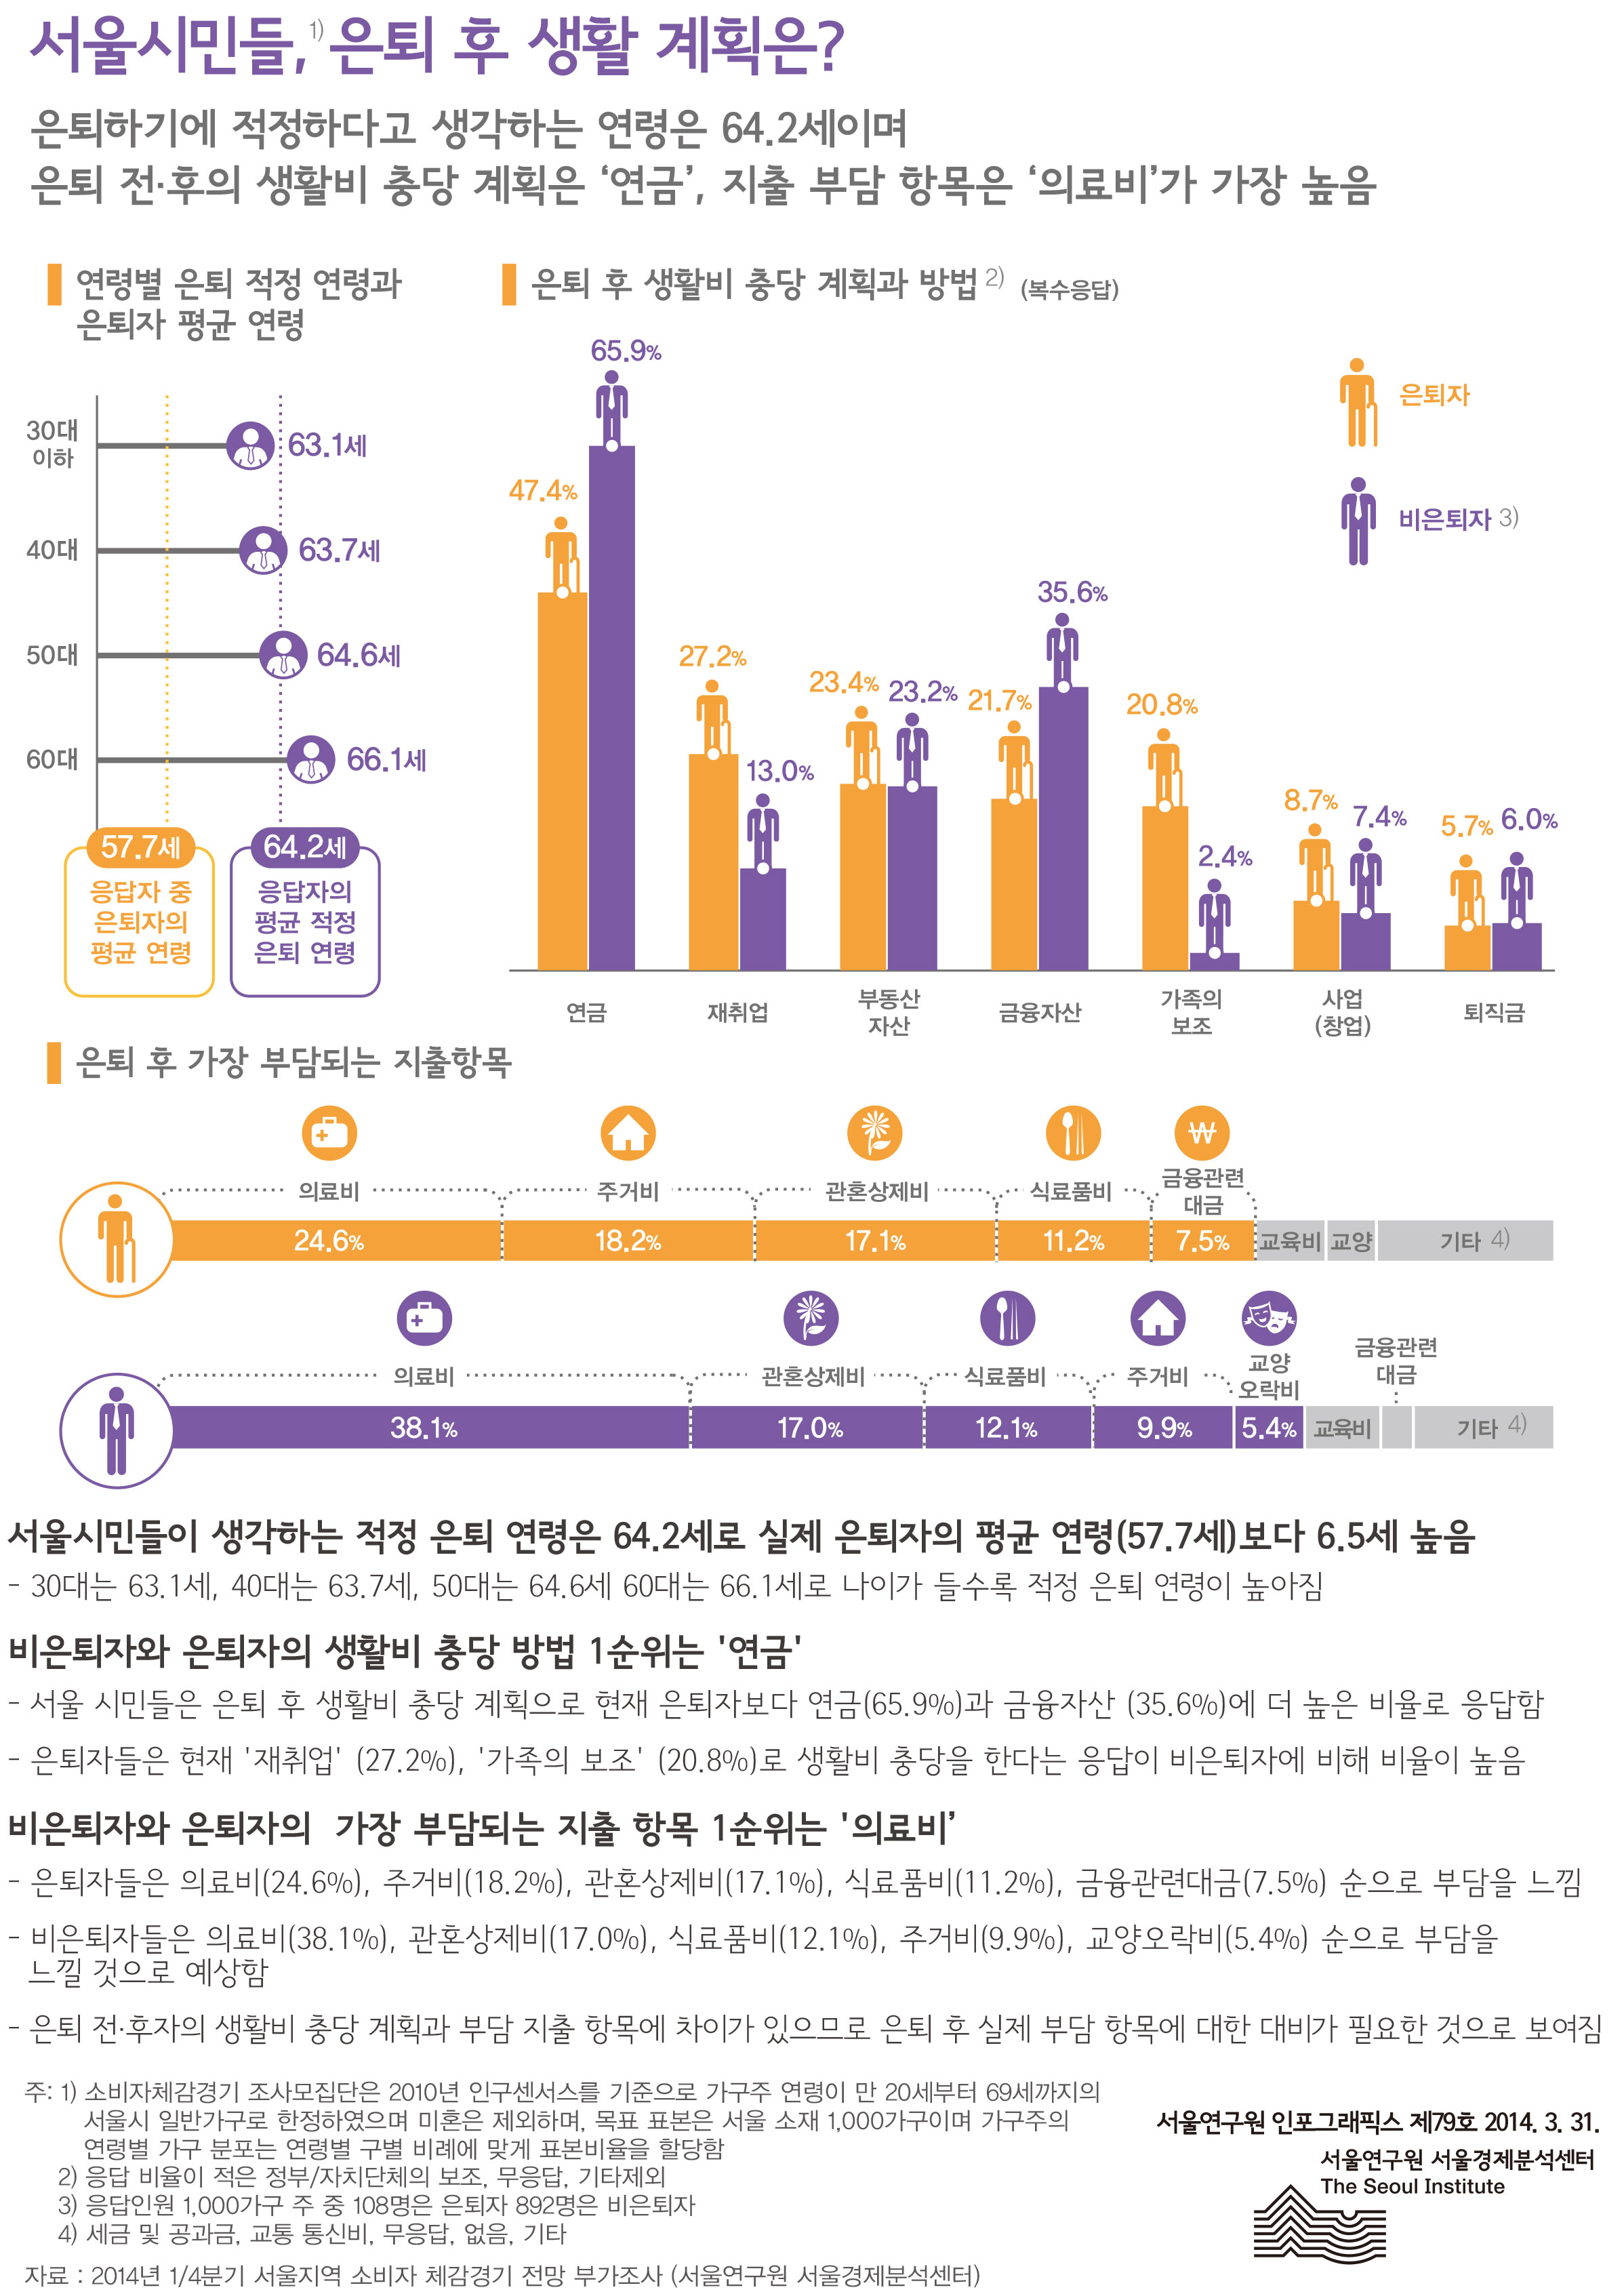 서울시민들, 은퇴 후 생활 계획은? 서울인포그래픽스 제79호 2014년 3월 31일 은퇴하기에 적정하다고 생각하는 연령은 64.2세이며 은퇴 전·후의 생활비 충당 계획은 ‘연금’, 지출 부담 항목은‘의료비’가 가장 높음으로 정리될 수 있습니다.